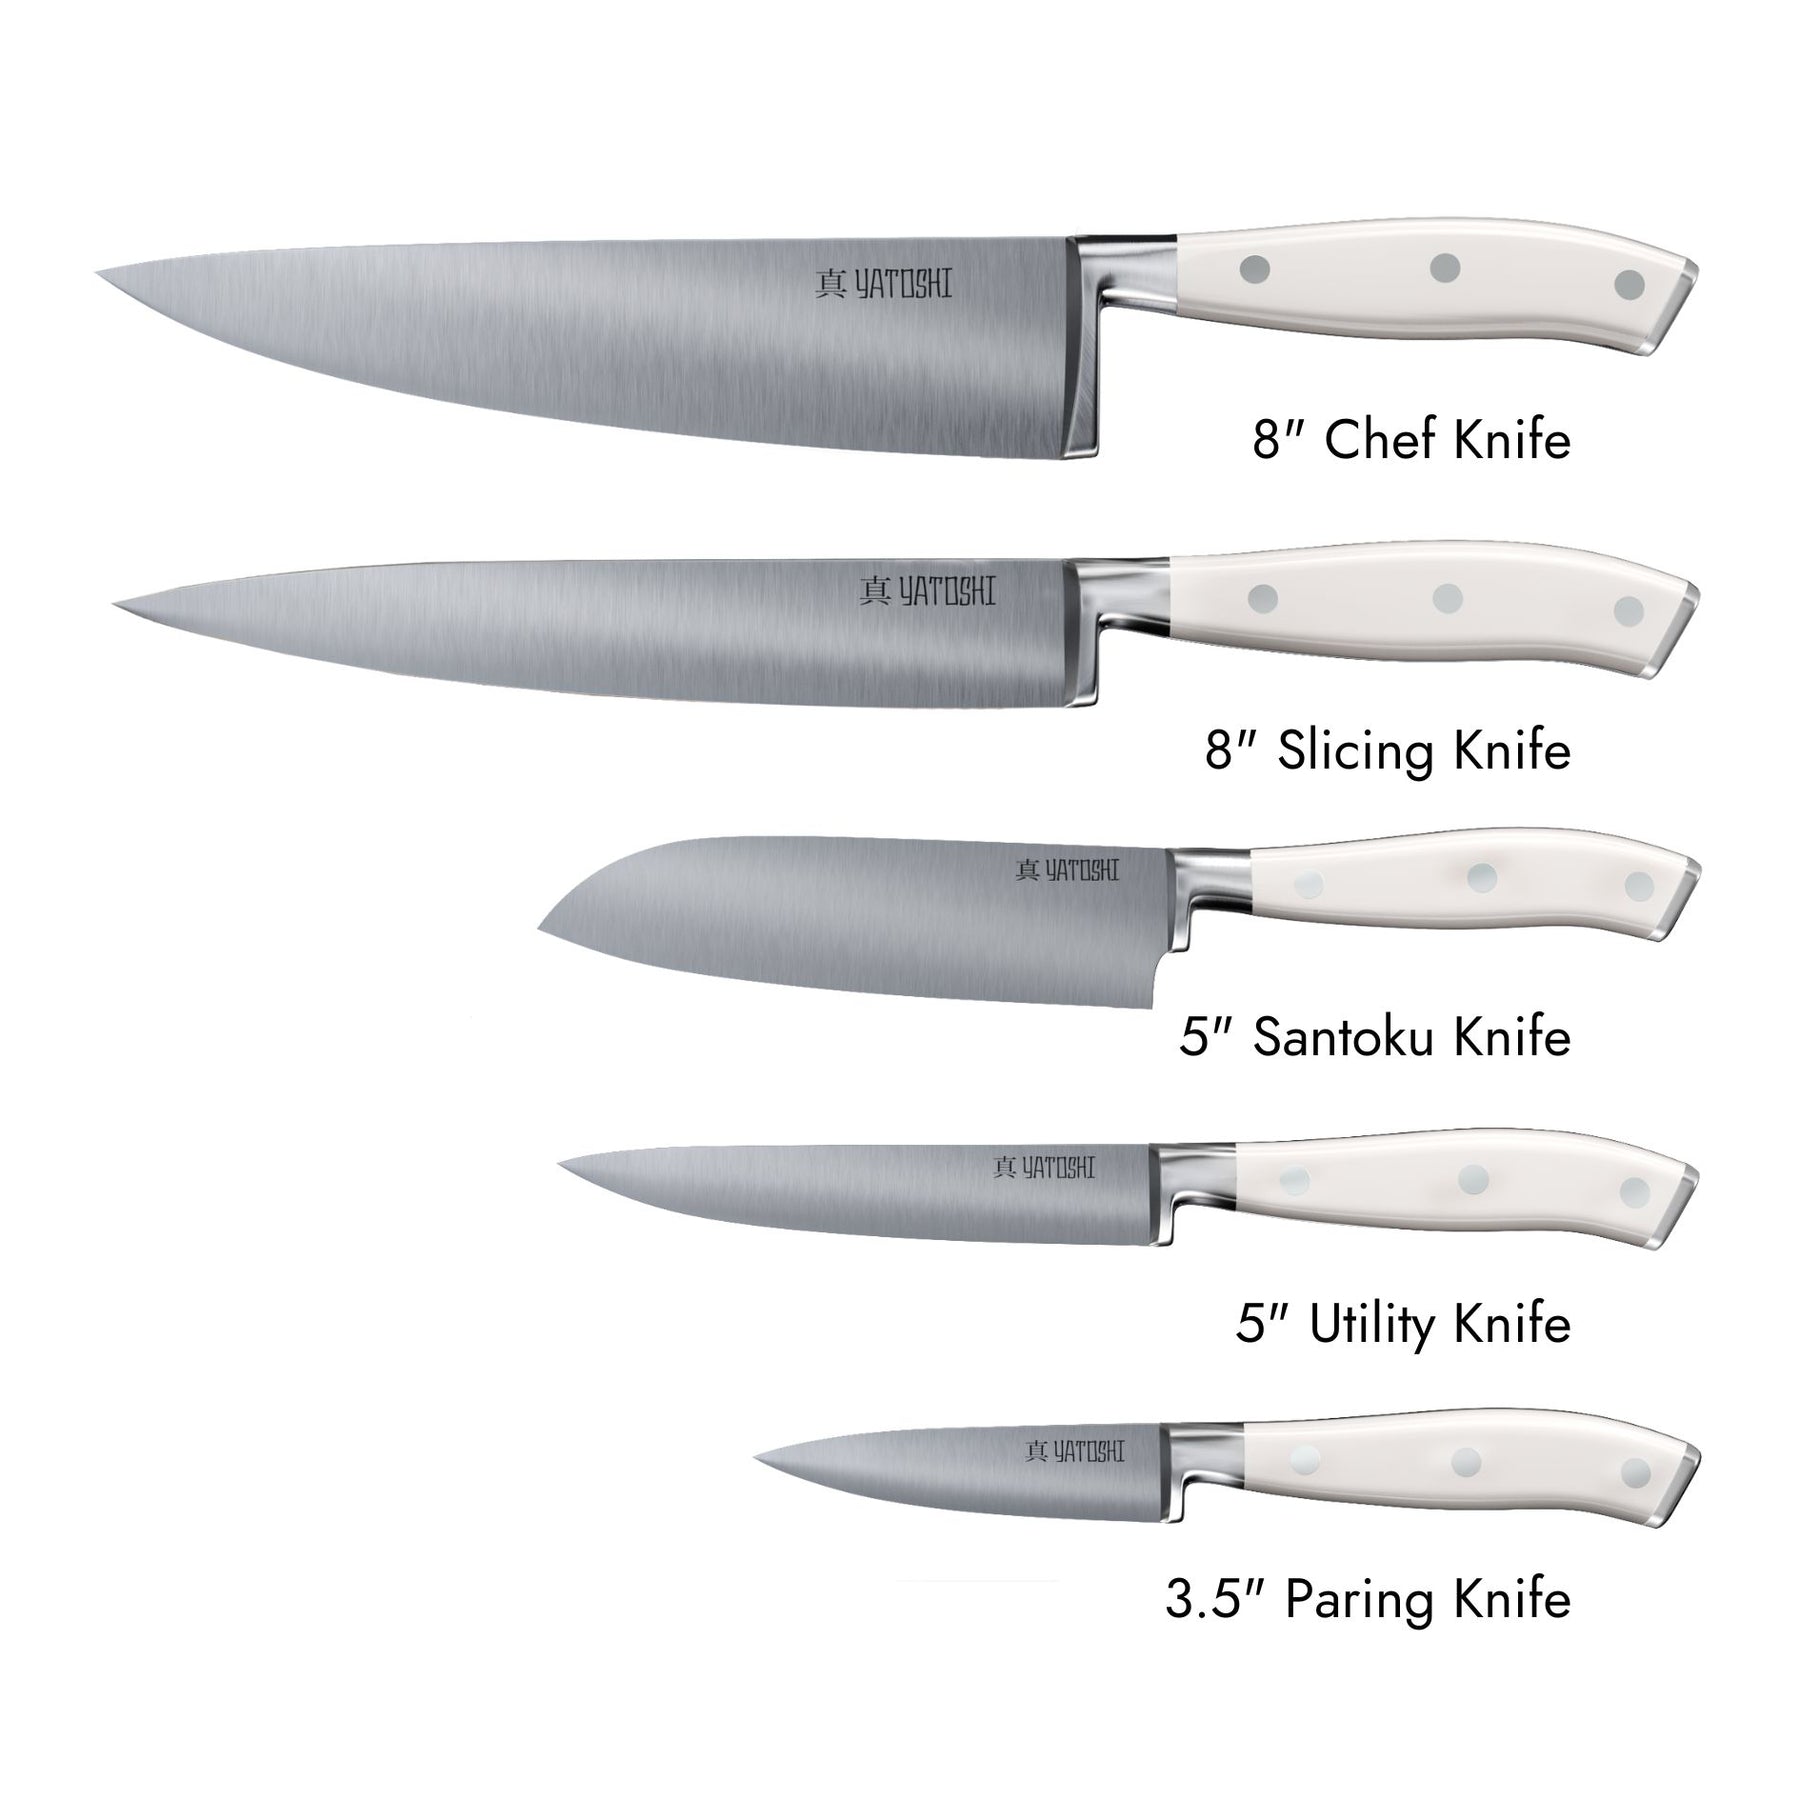 Kitchen Knife Block Set - White 7 White Set